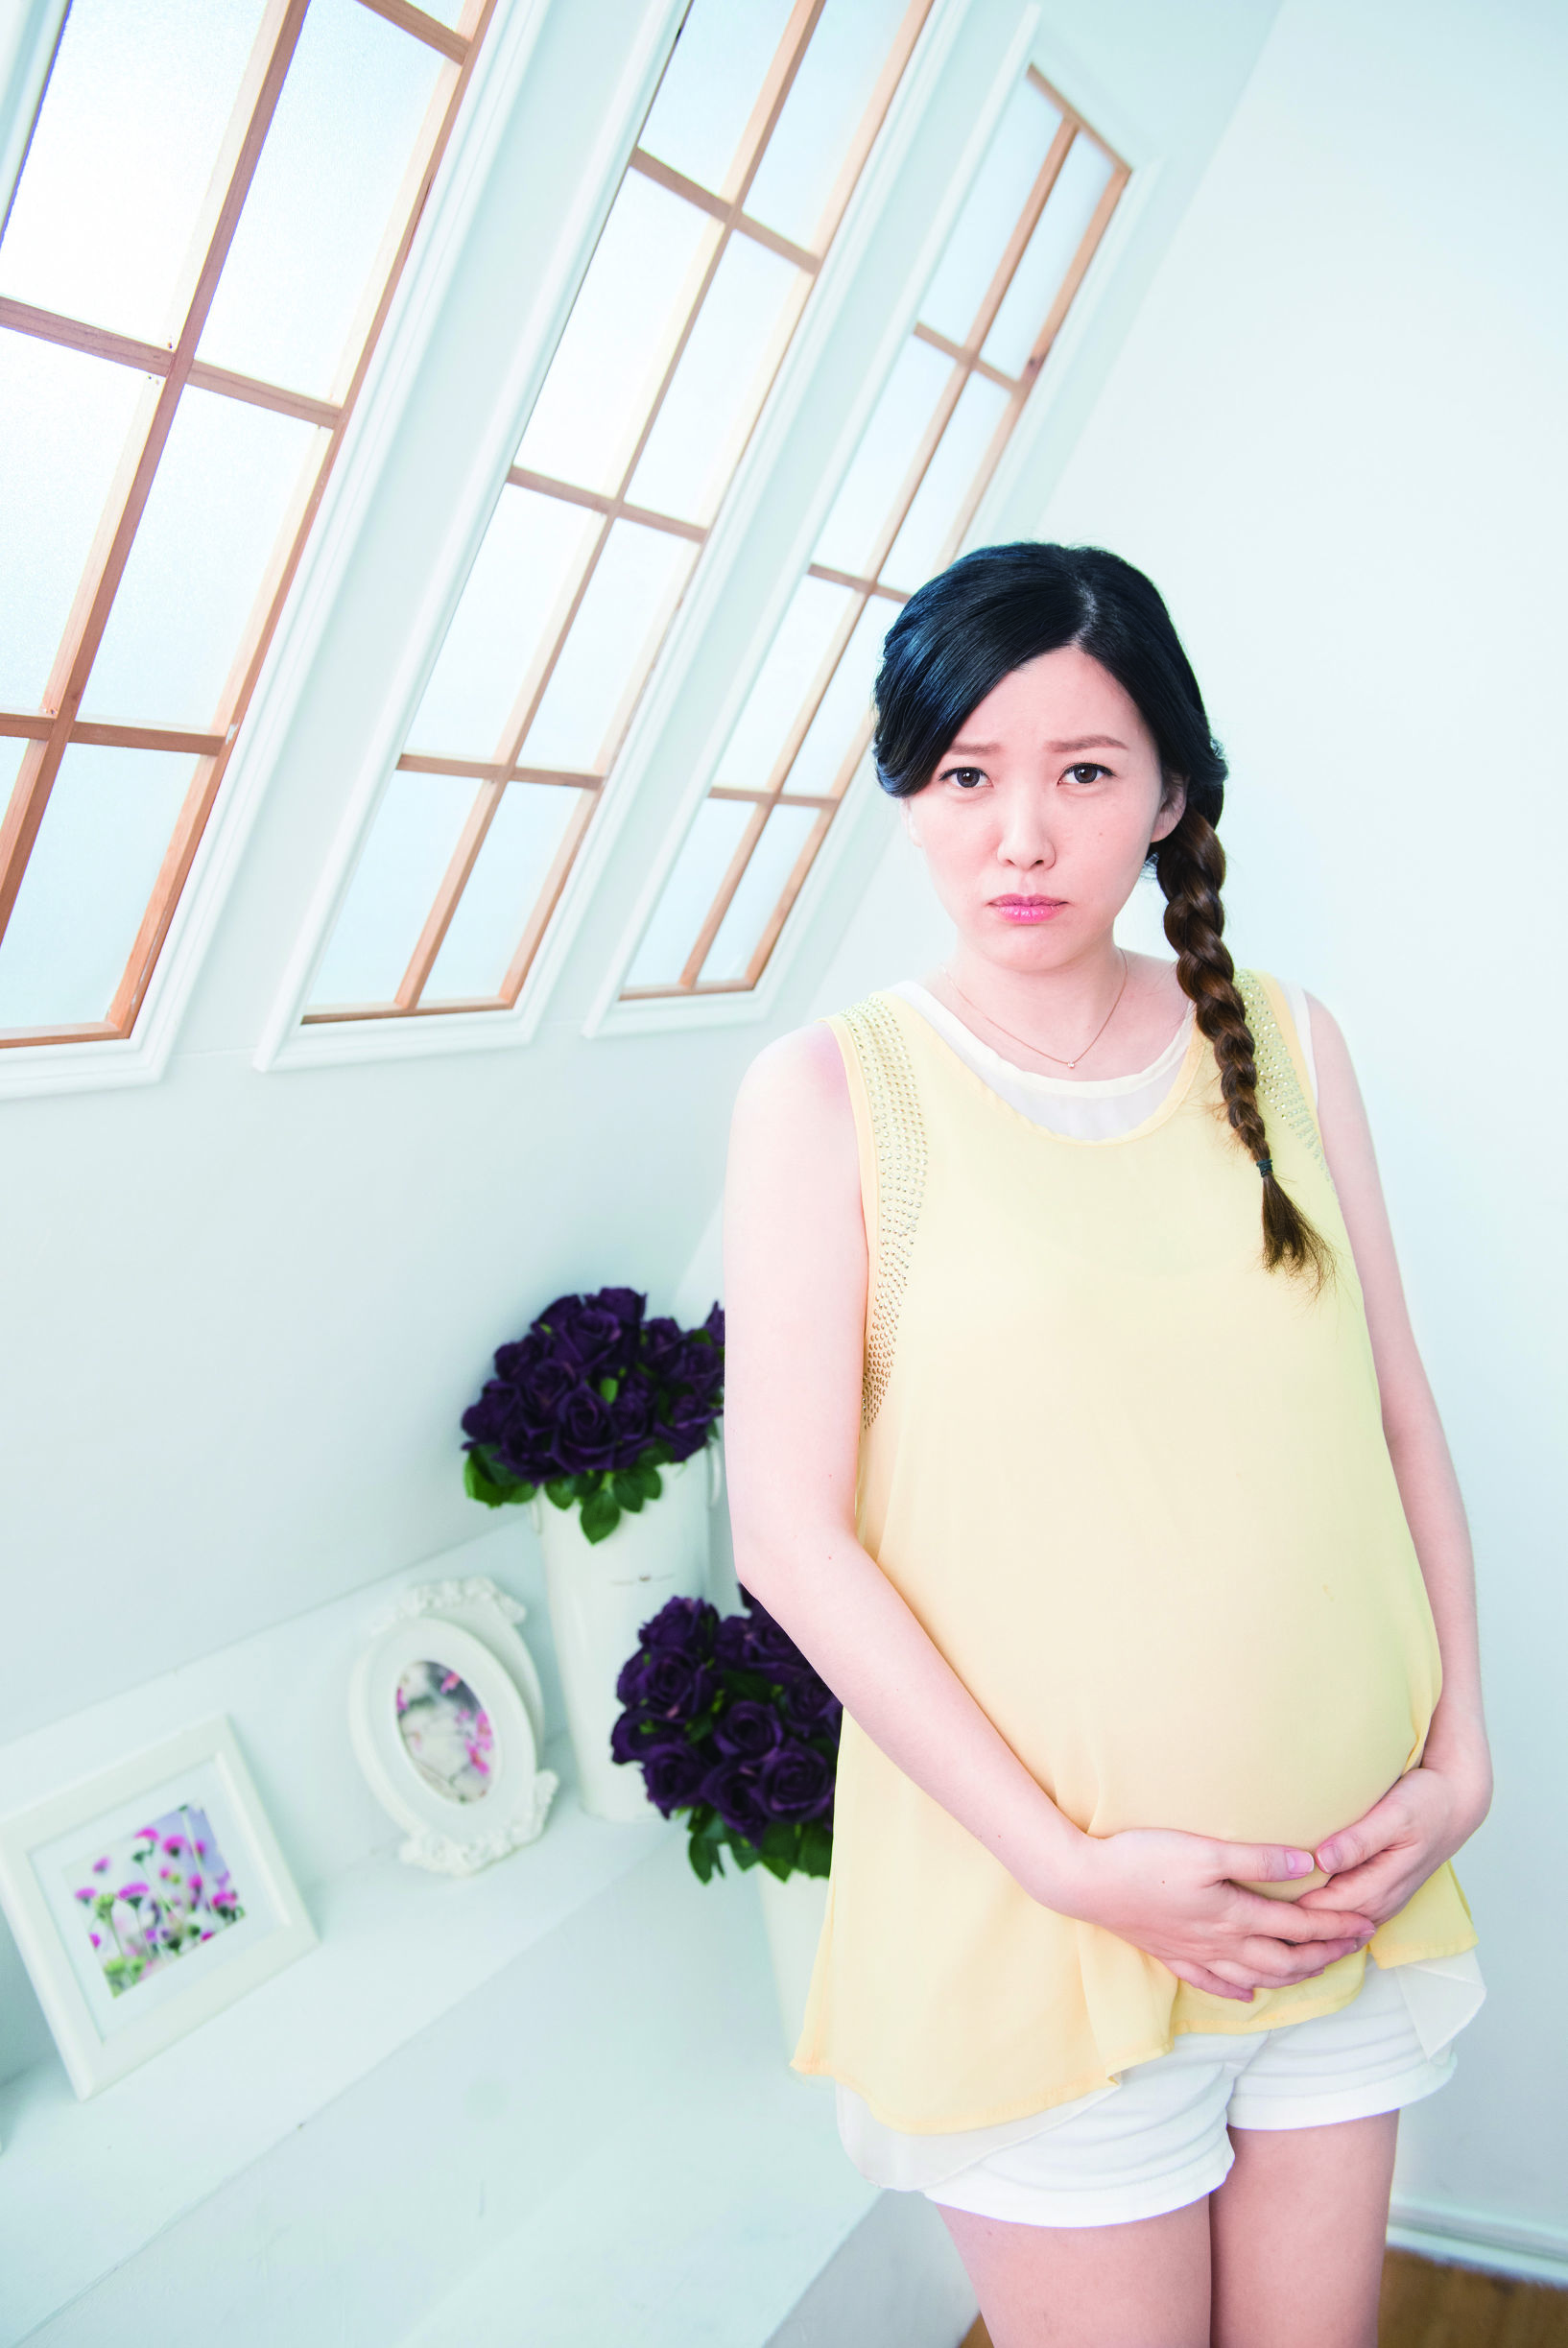 孕期健康巧管理  2大原则孕育健康宝宝